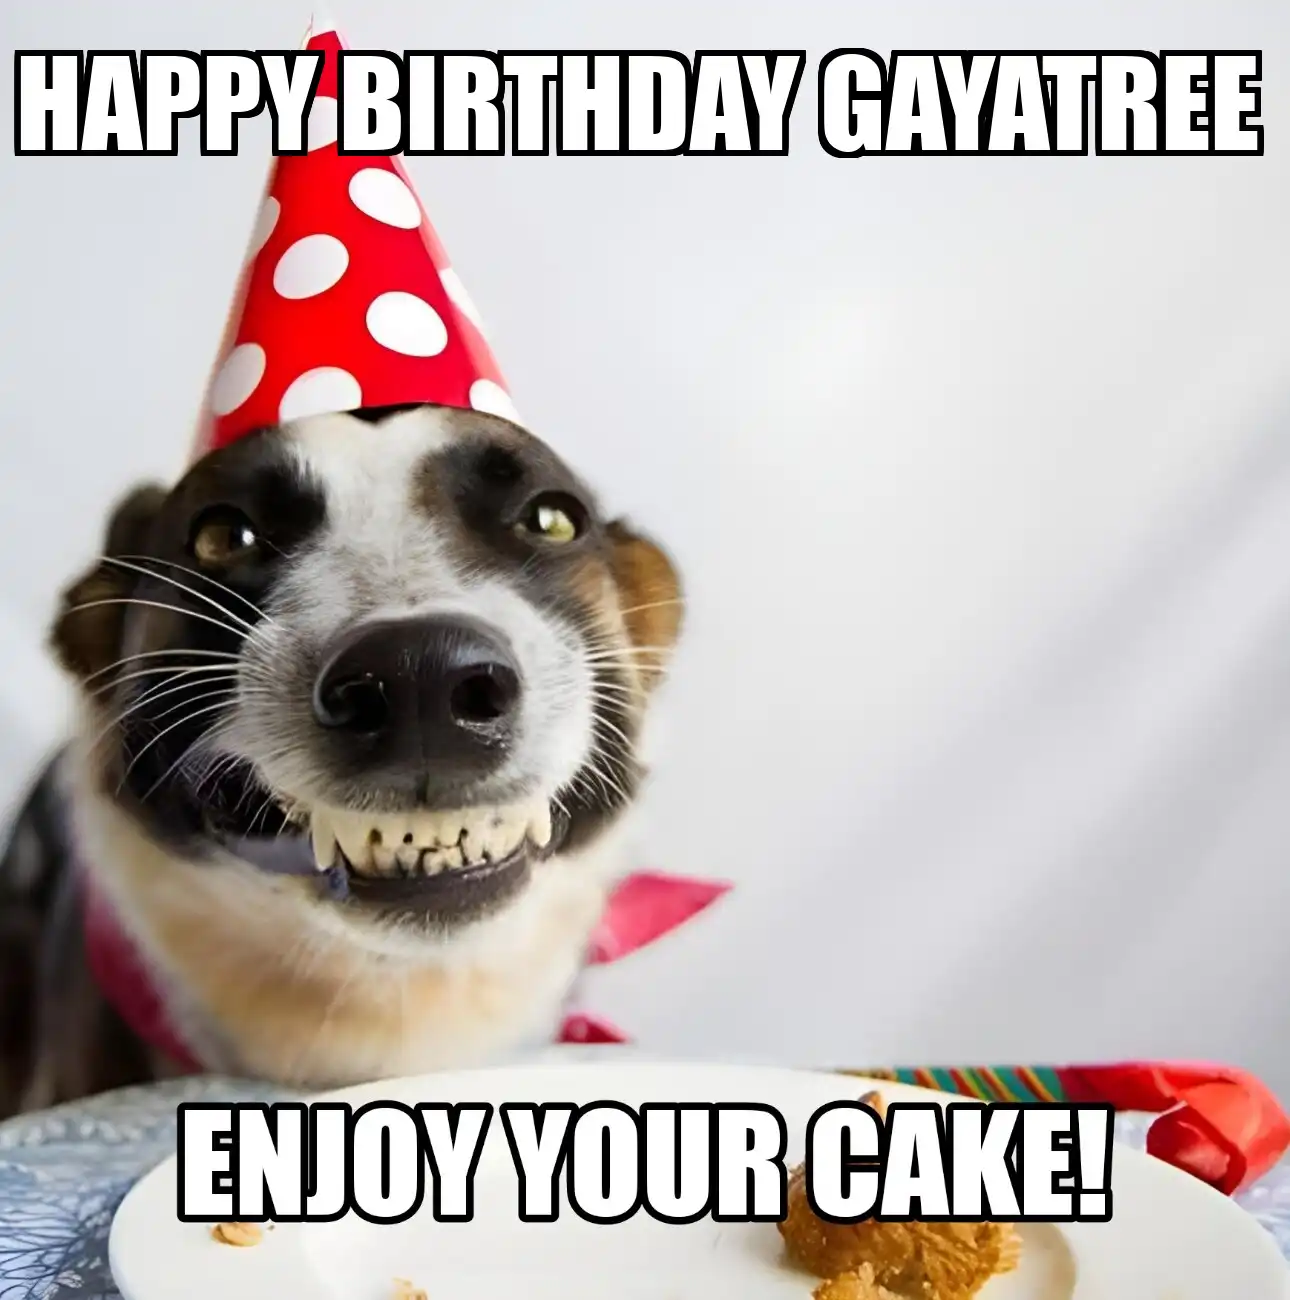 Happy Birthday Gayatree Enjoy Your Cake Dog Meme